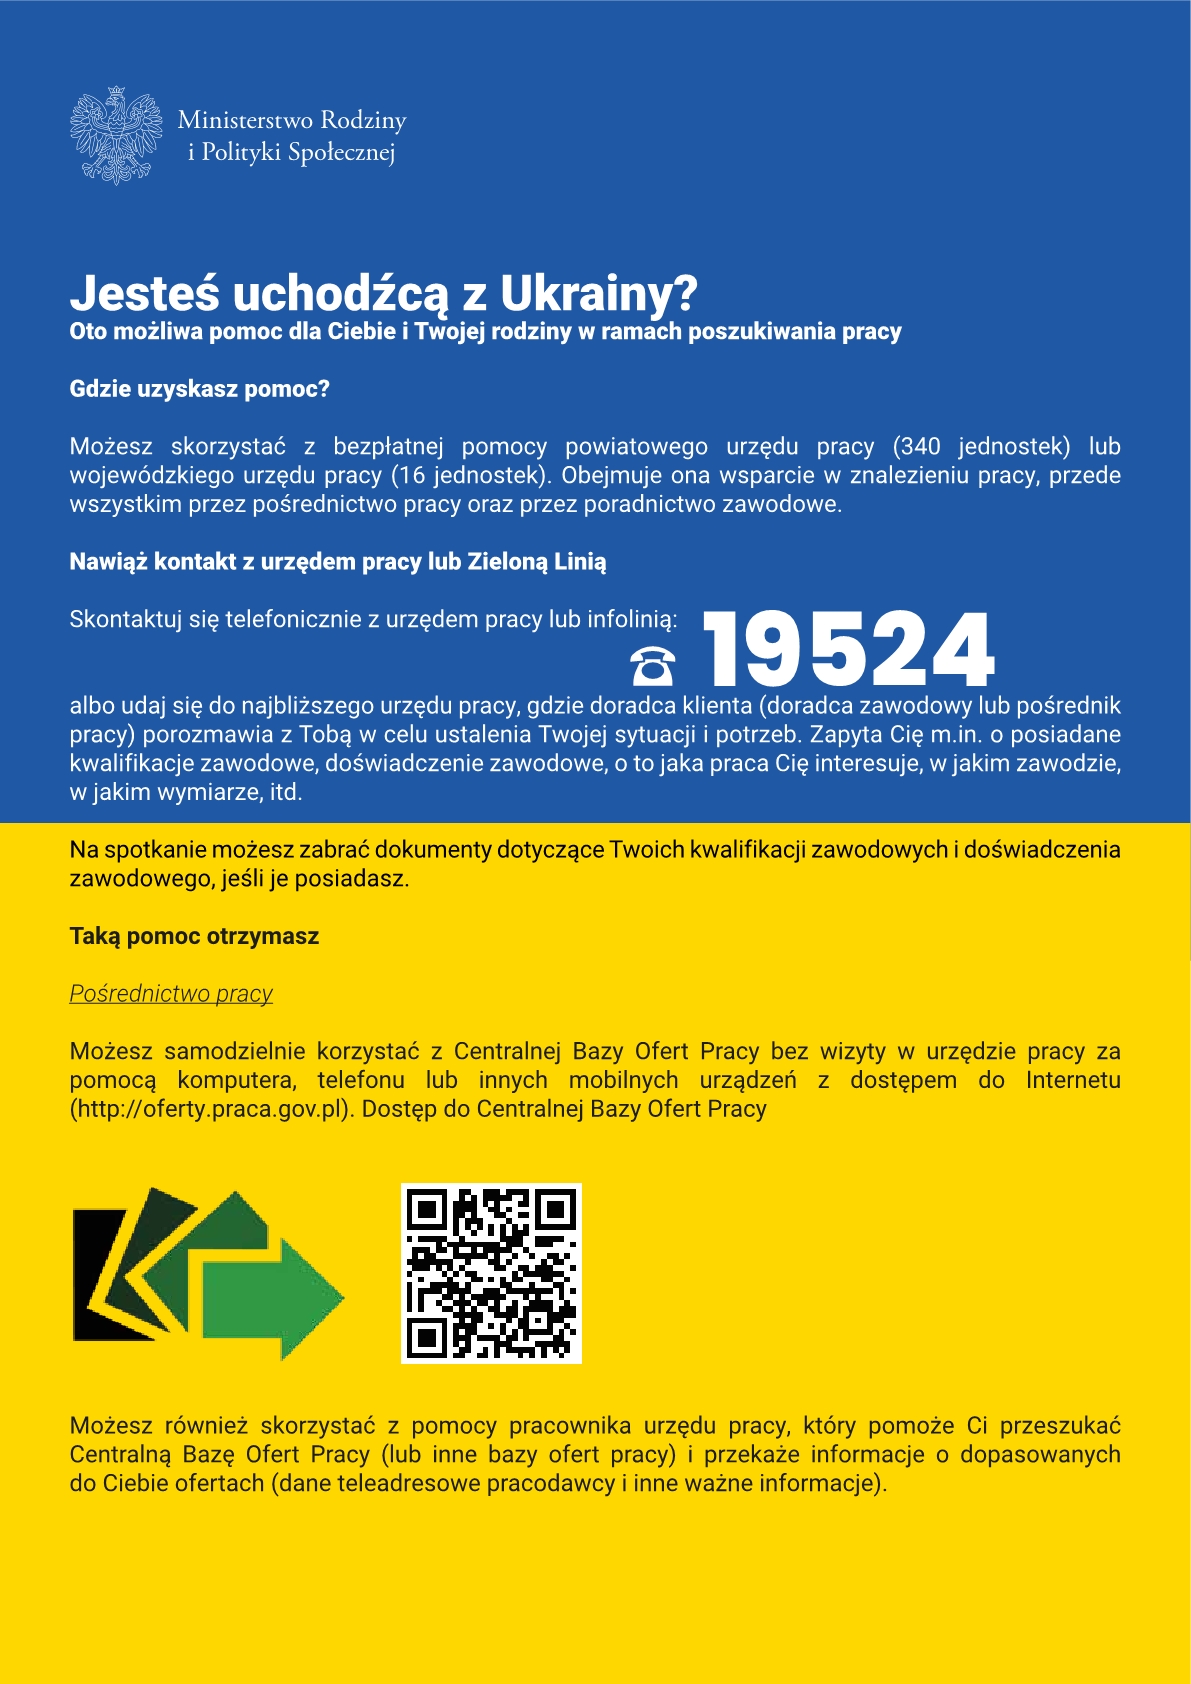 Ulotka zawiera numer infolinii dla uchodźców z Ukrainy, którzy poszukują pracy w Polsce - tel. 19524.